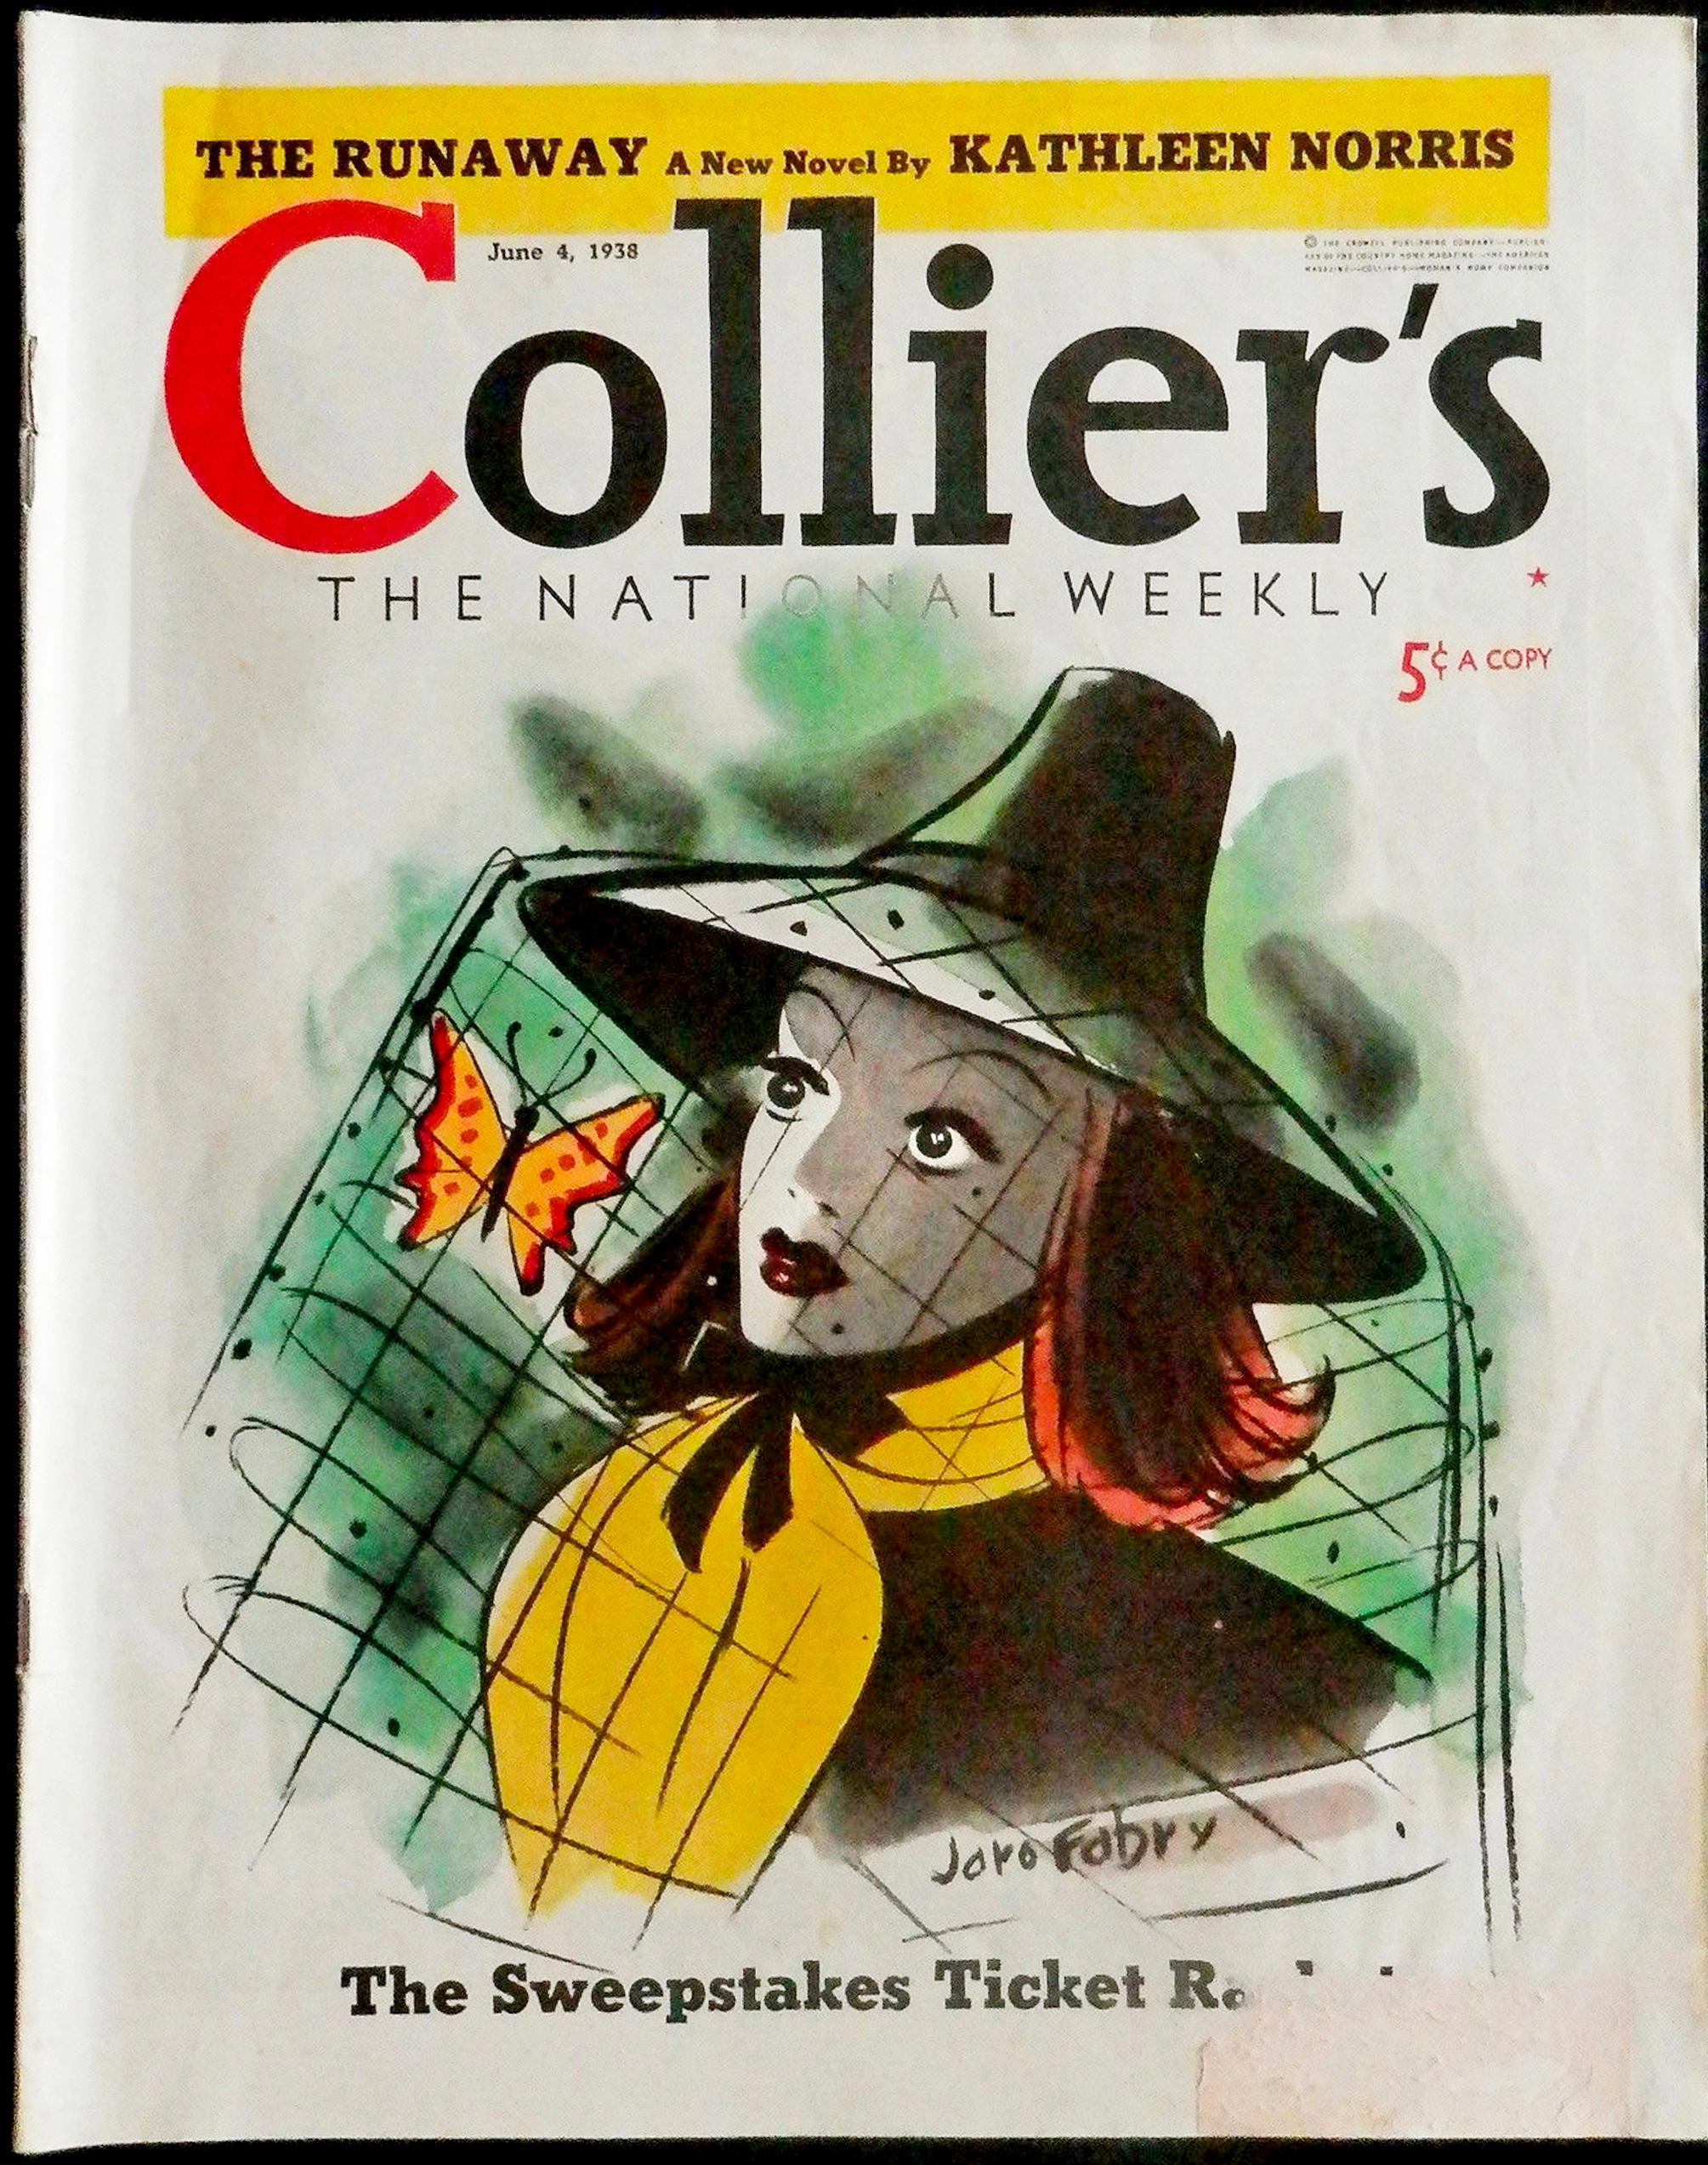 Woman mit einem Schmetterling im Hut. Colliers-Zeitungscover – Art von Jaro Fabry